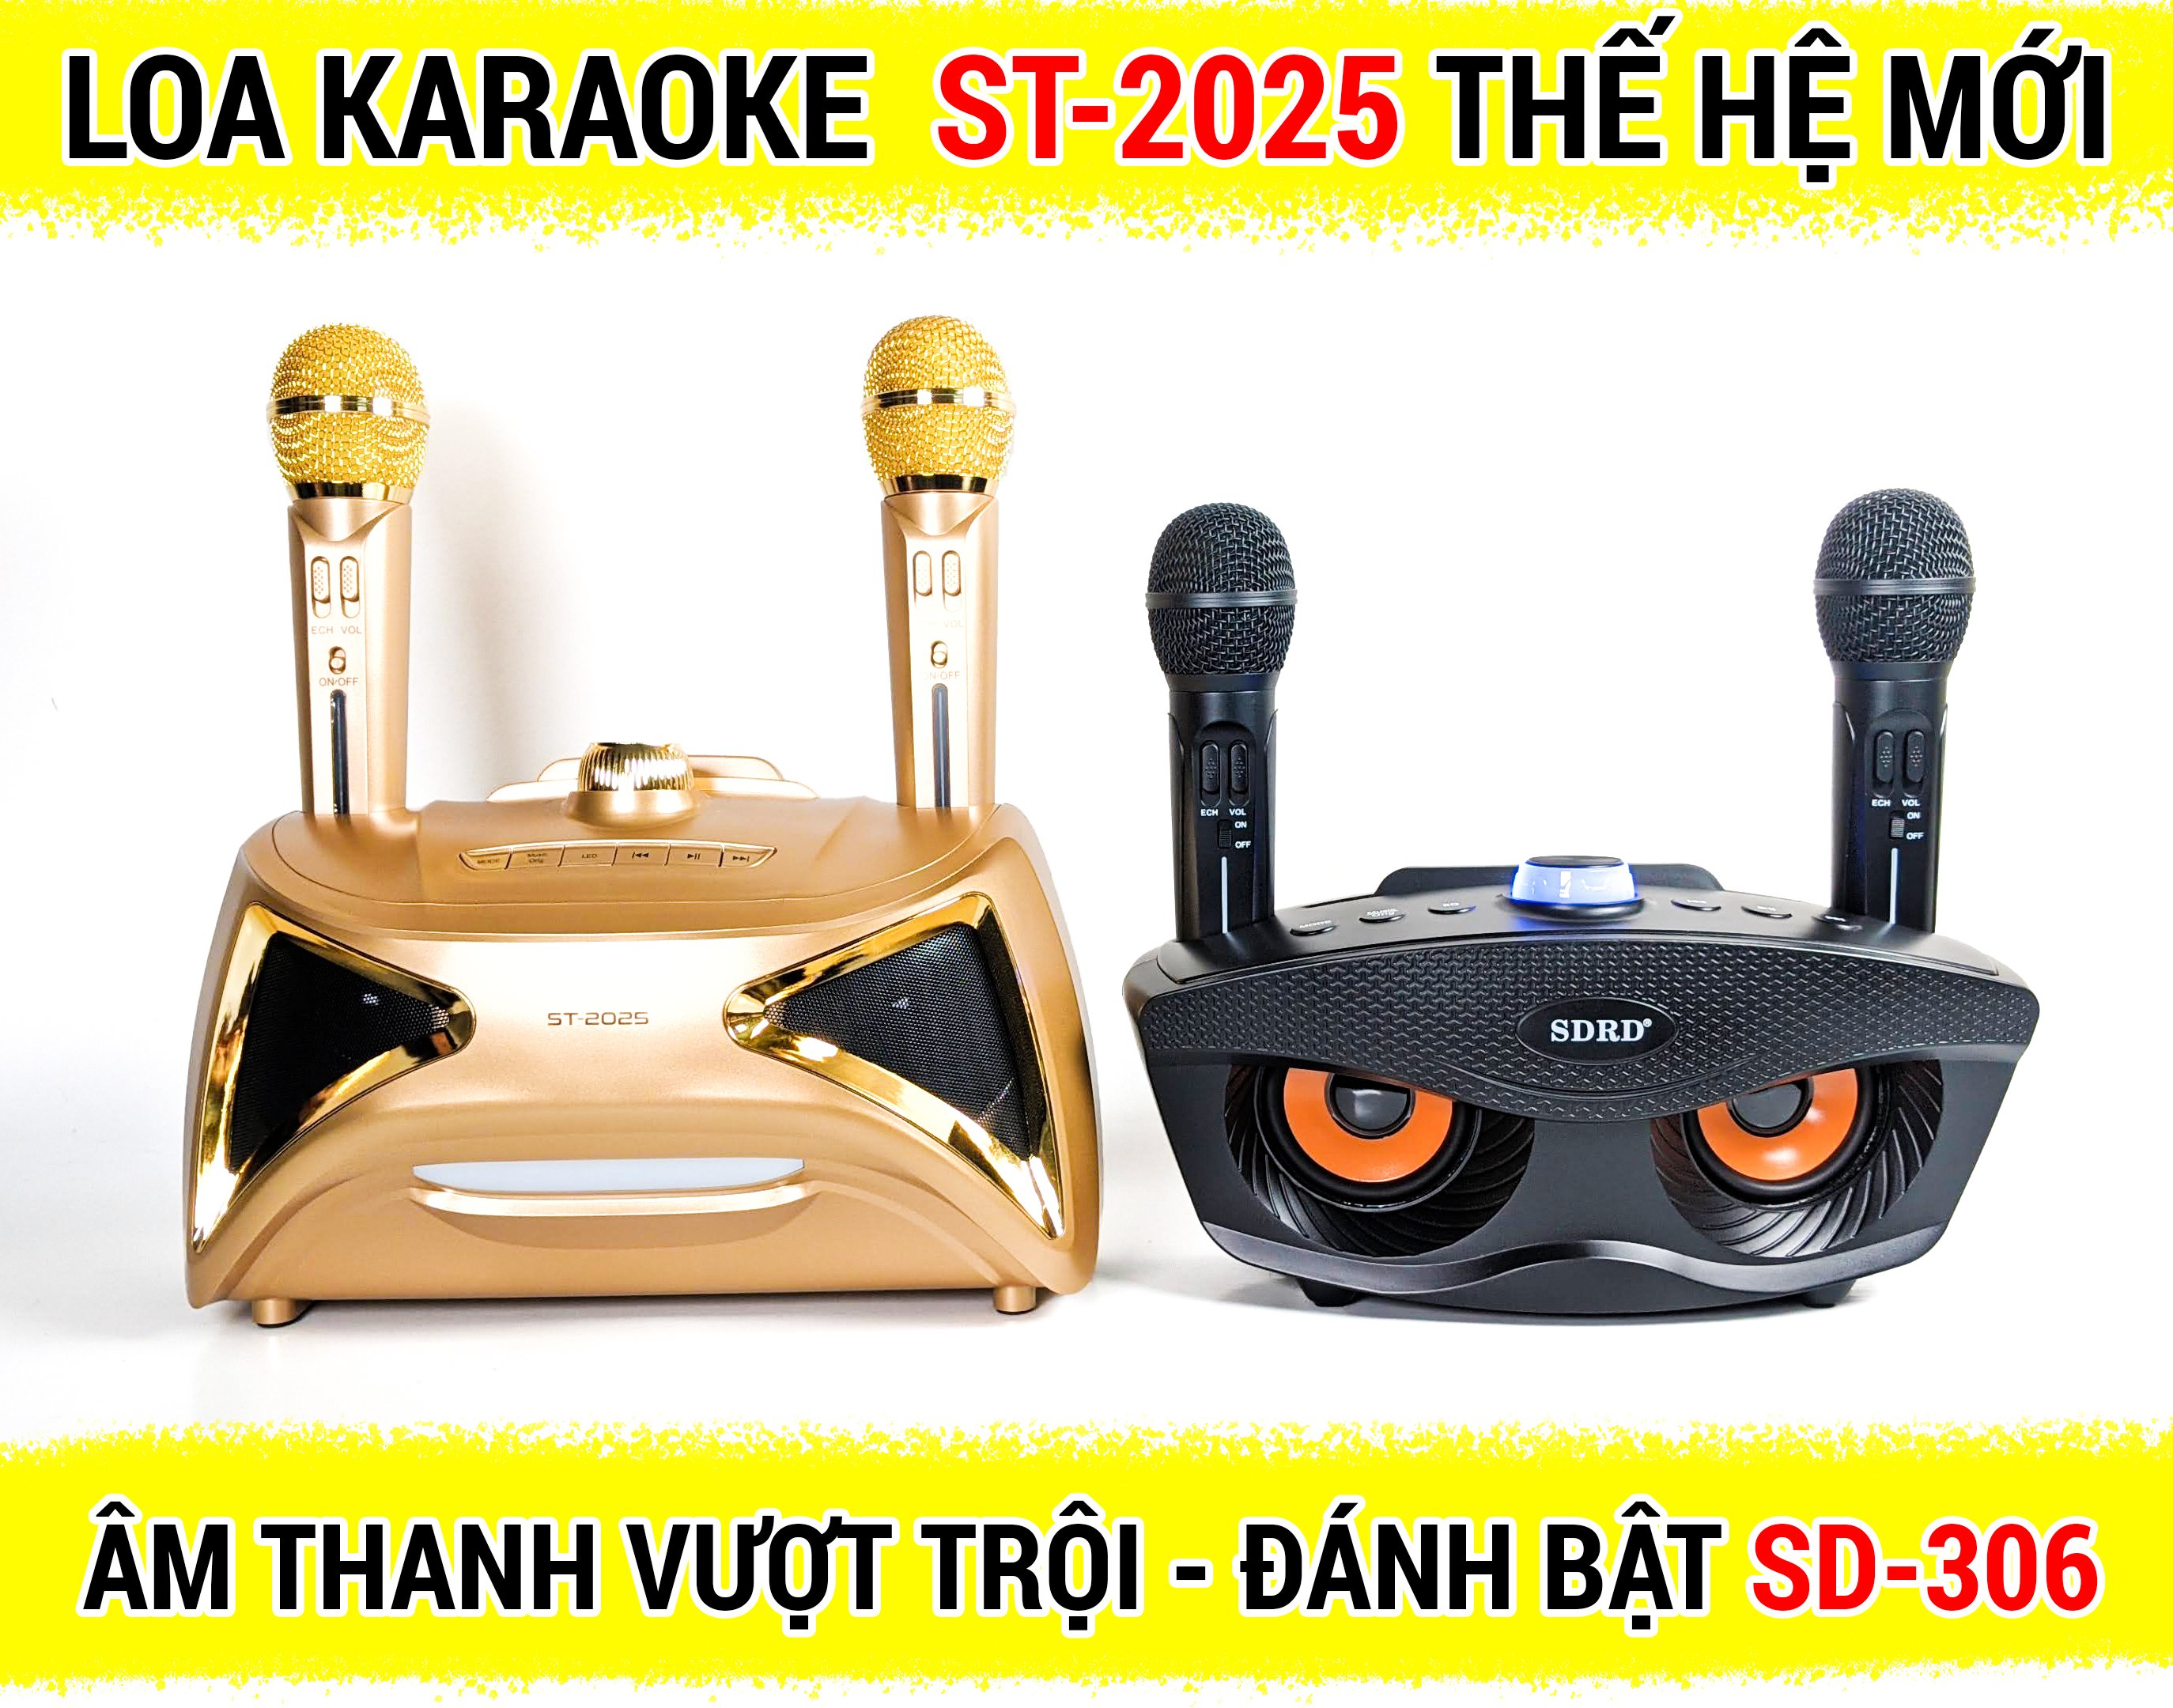 Loa Hát Karaoke Bluetooth Cao Cấp, Kèm 2 Micro Không Dây, Loa Hát Karaoke Bluetooth Mini Có Kèm Mic SD-503 Loa Karaoke Xách Tay Nhỏ Gọn Âm Thanh Hay.